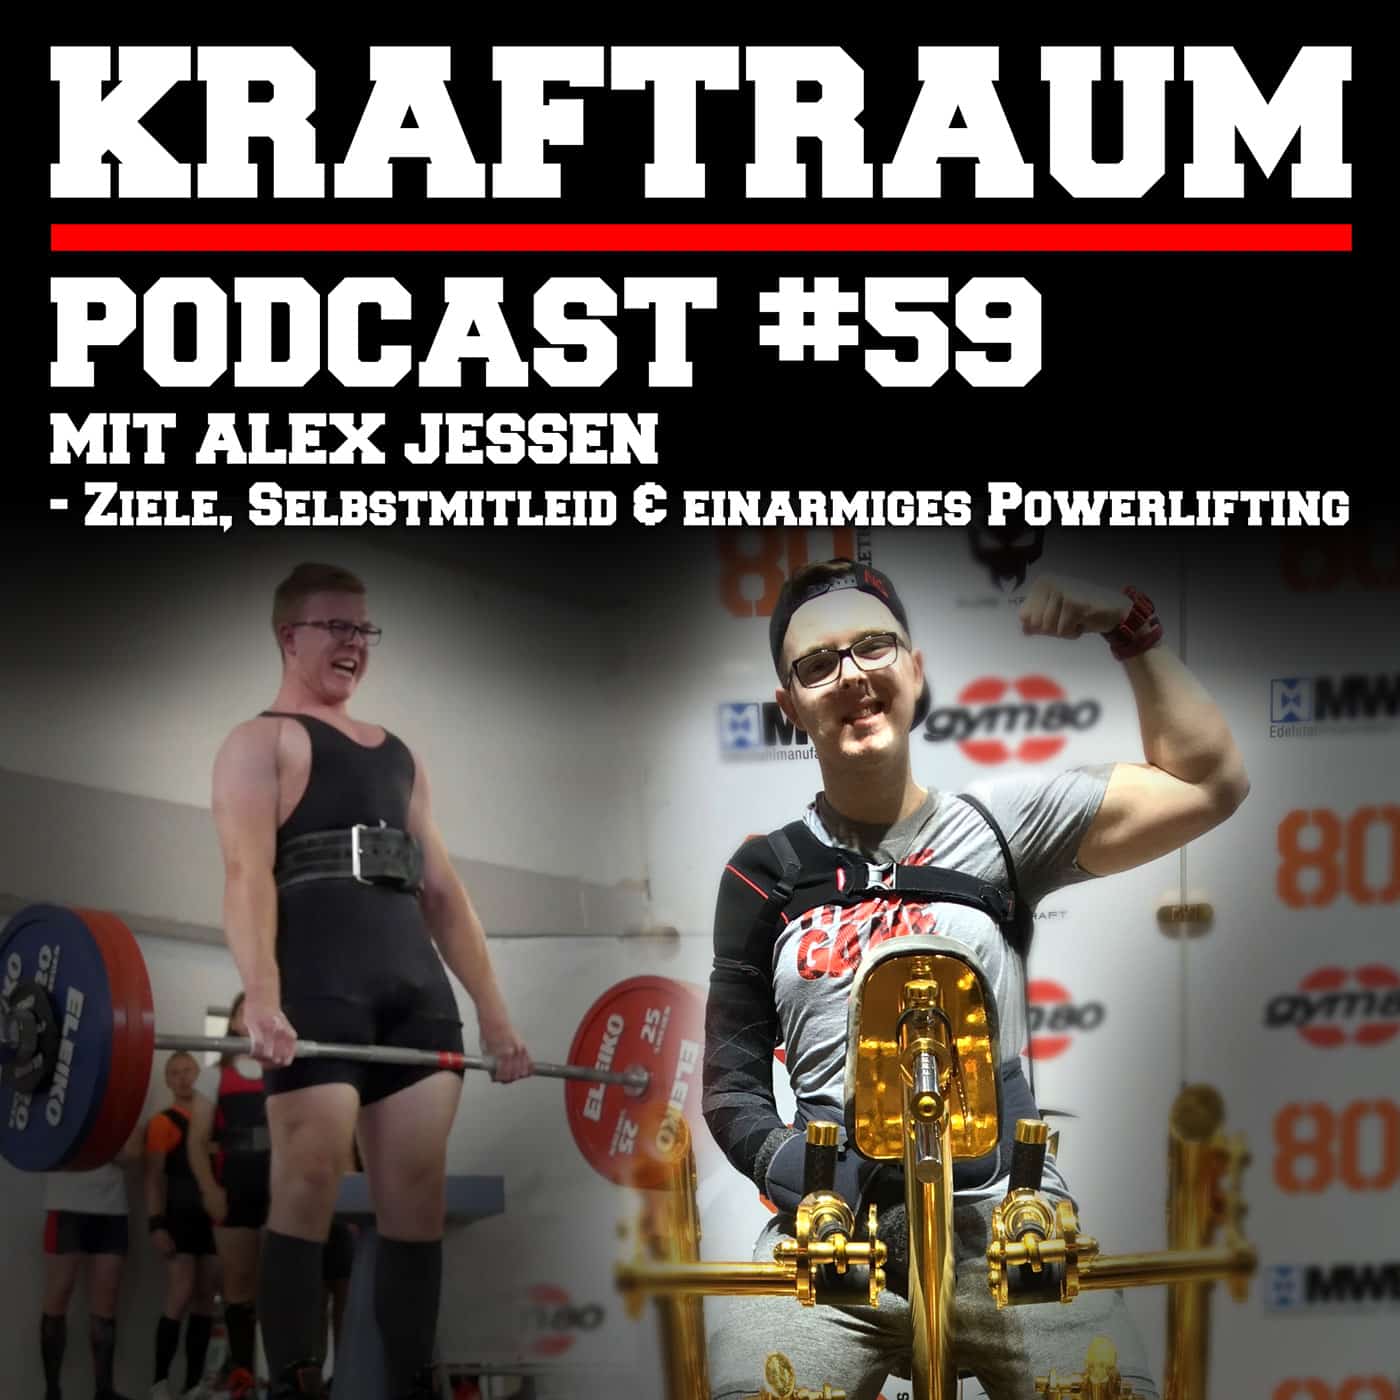 Ziele, Selbstmitleid & einarmiges Powerlifting mit Alex Jessen (#59)